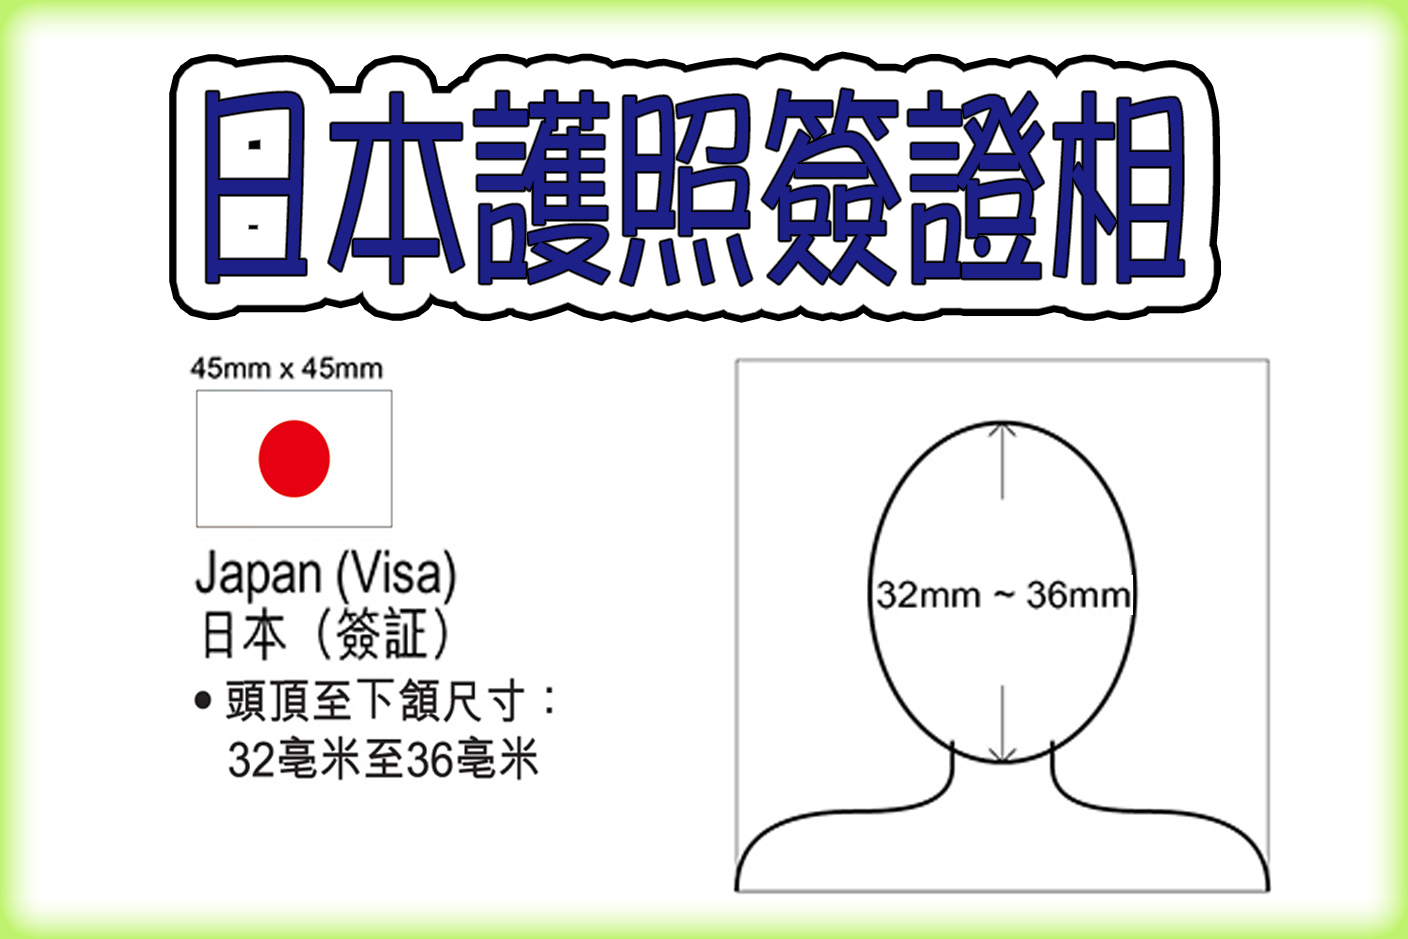 Japan Passport/Visa